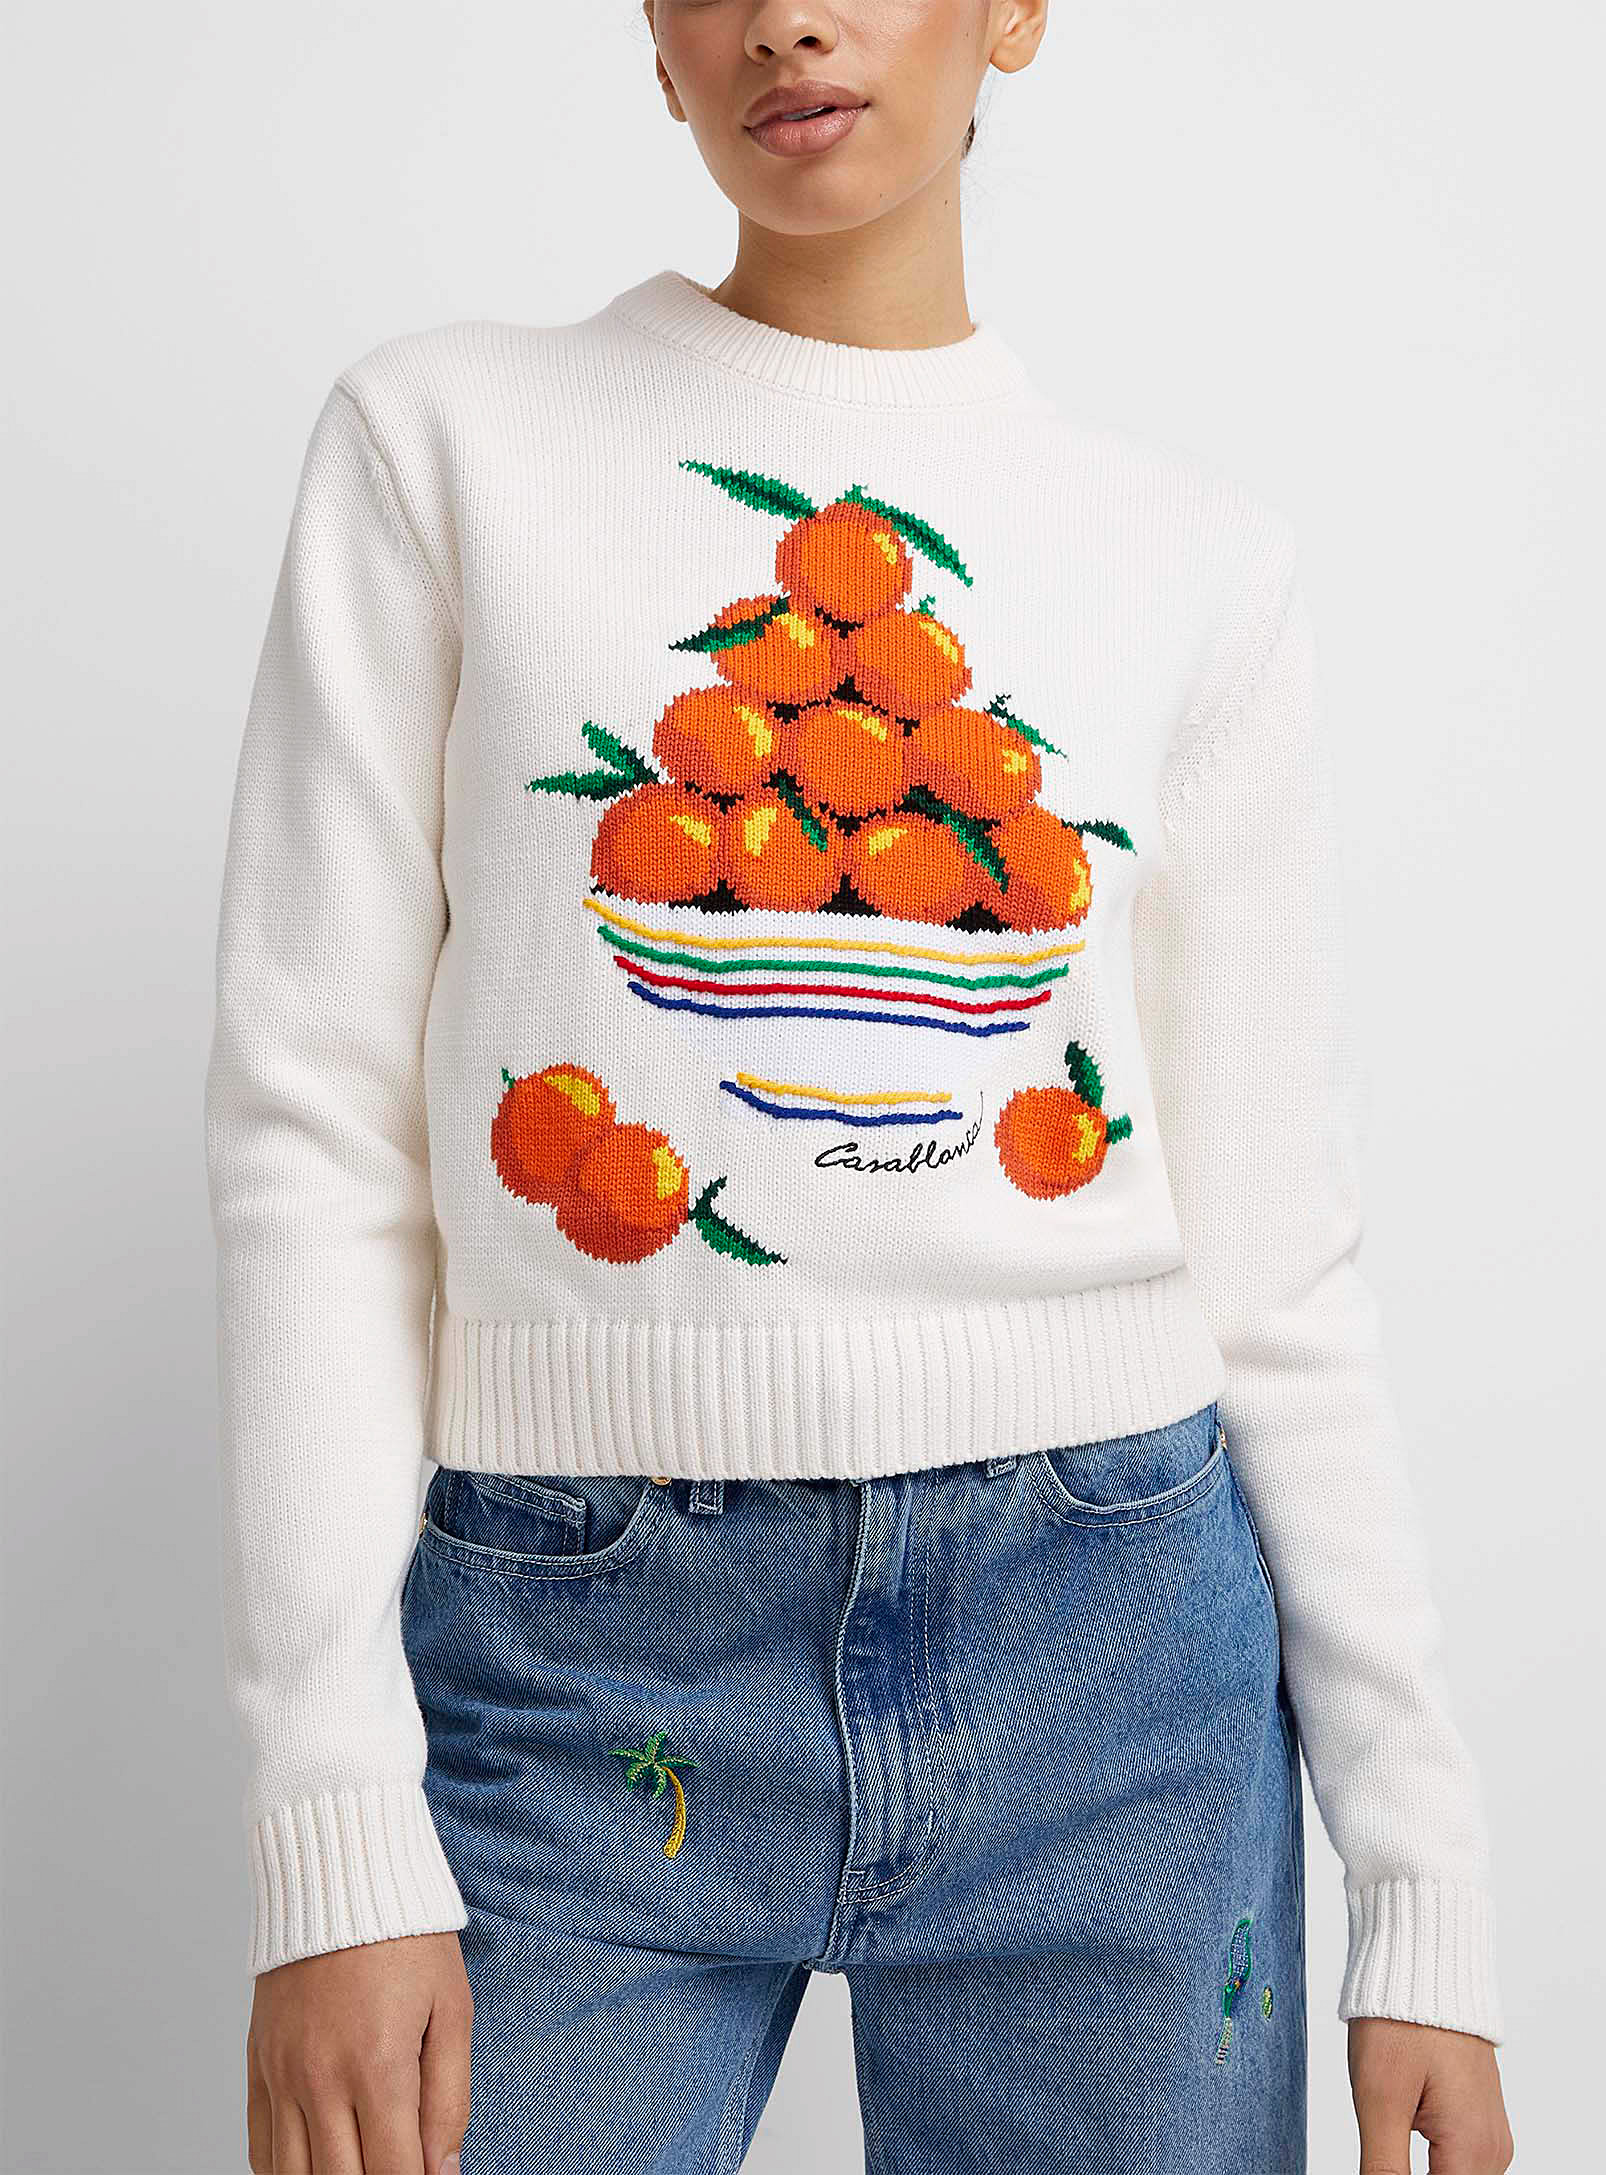 Casablanca - Le pull tricot intarsia oranges